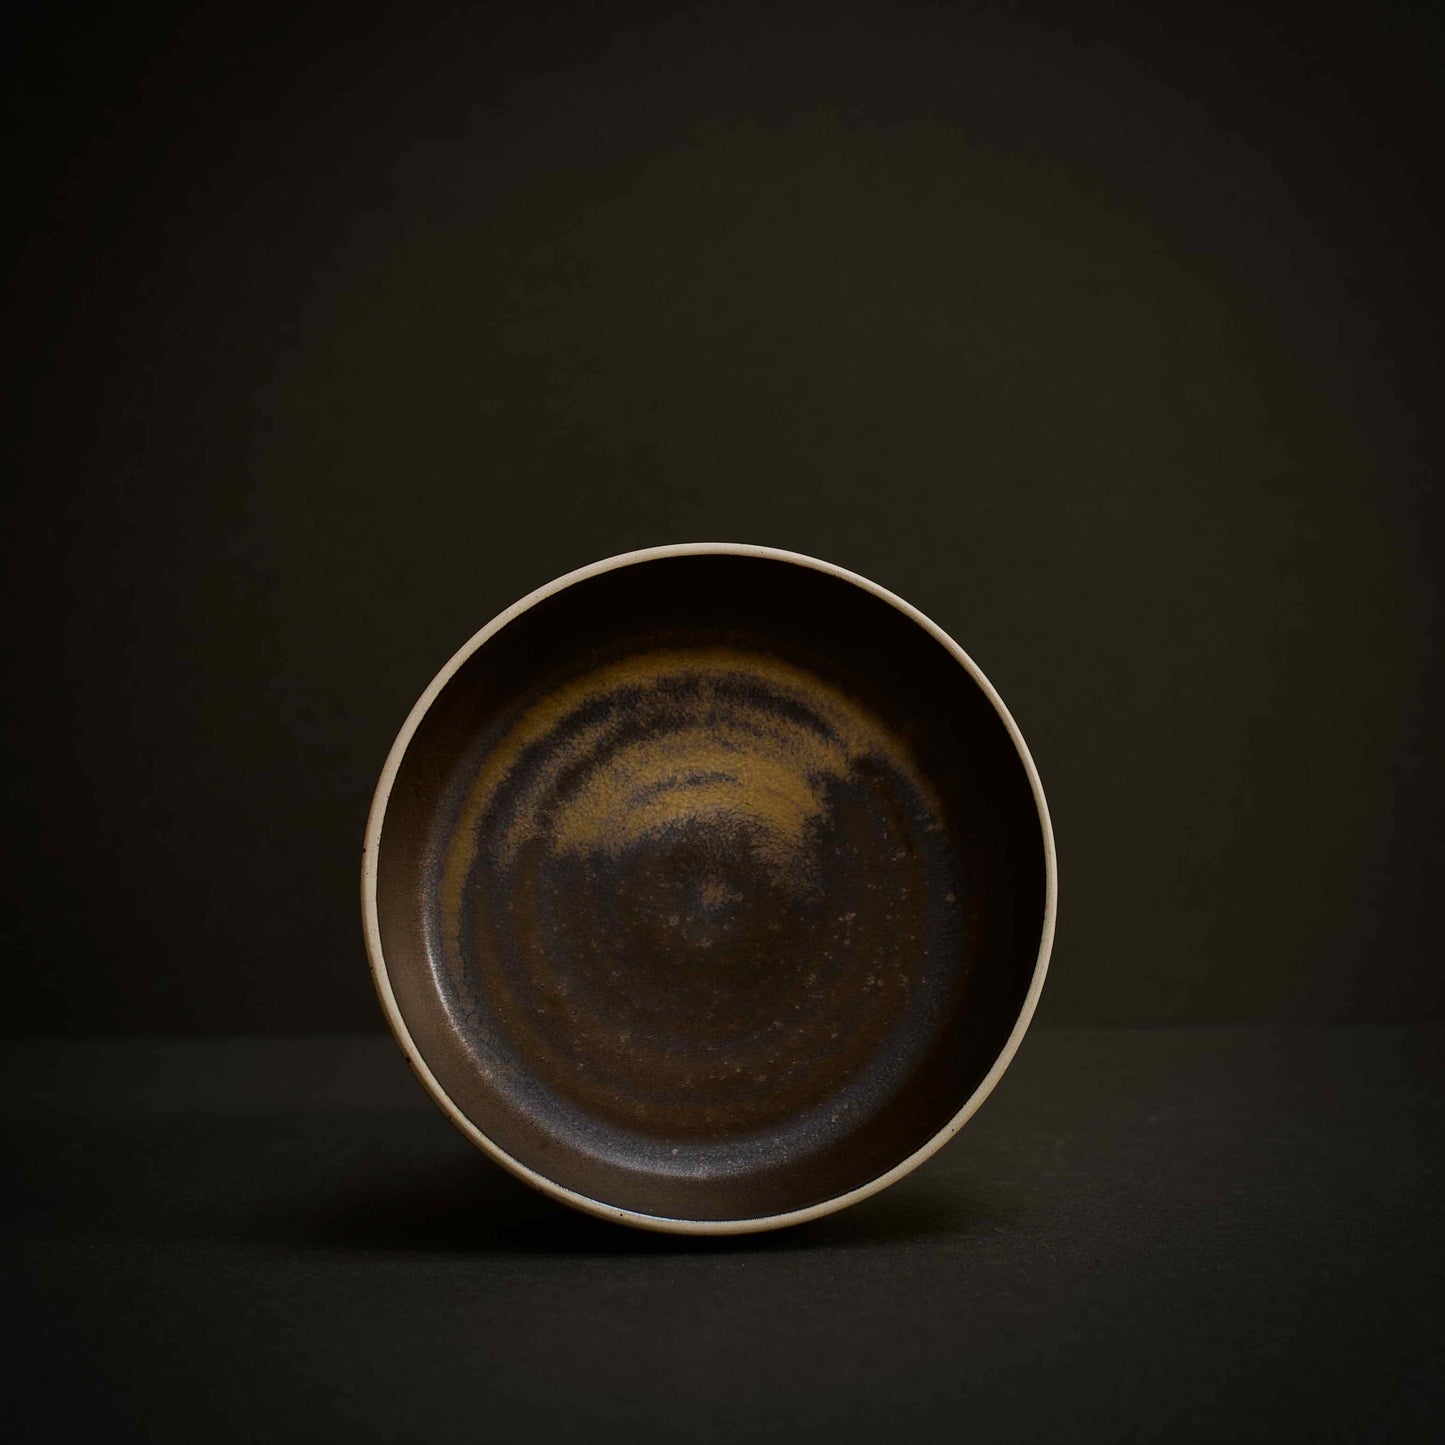 Bronze speckled bowl